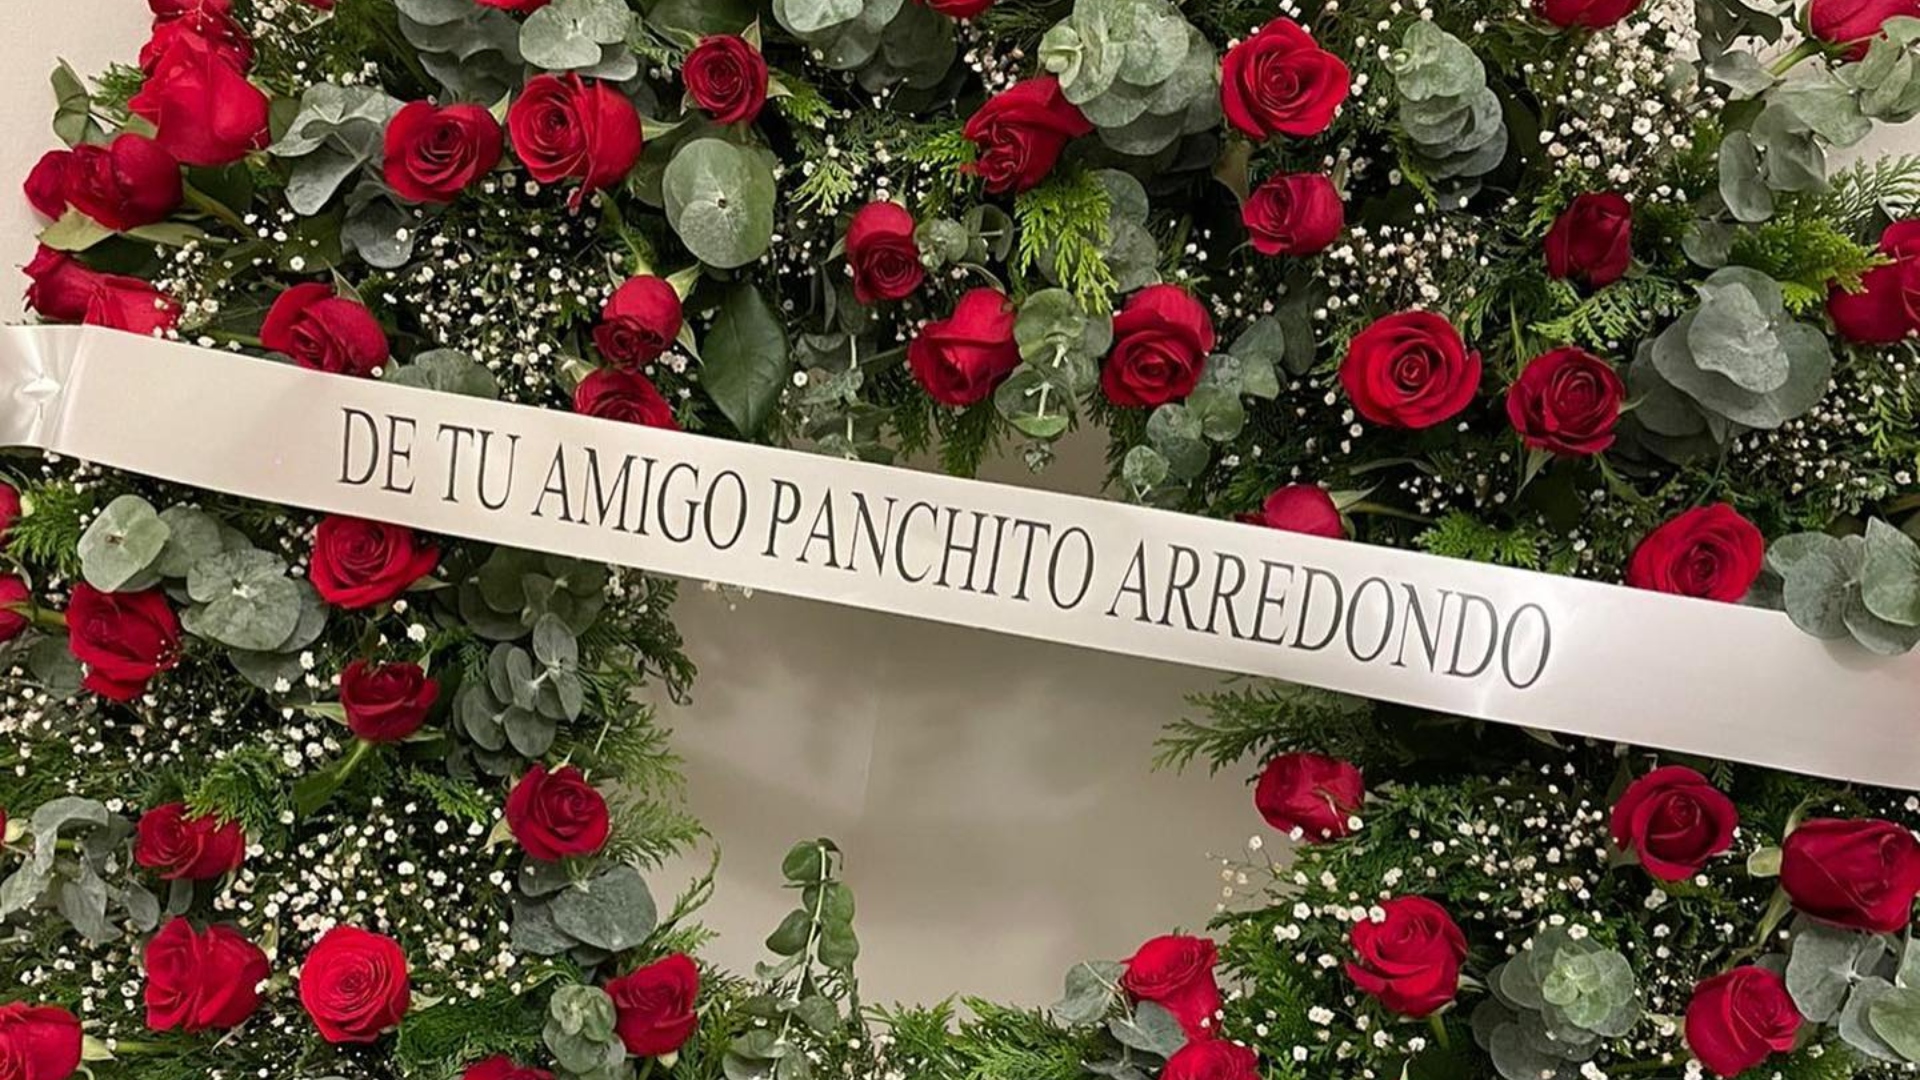 El cantante Panchito Arredondo acudió a la ceremonia fúnebre con un arreglo floral para homenajear a quien fuera su promotor. (Foto: Facebook/Panchito Arredondo)